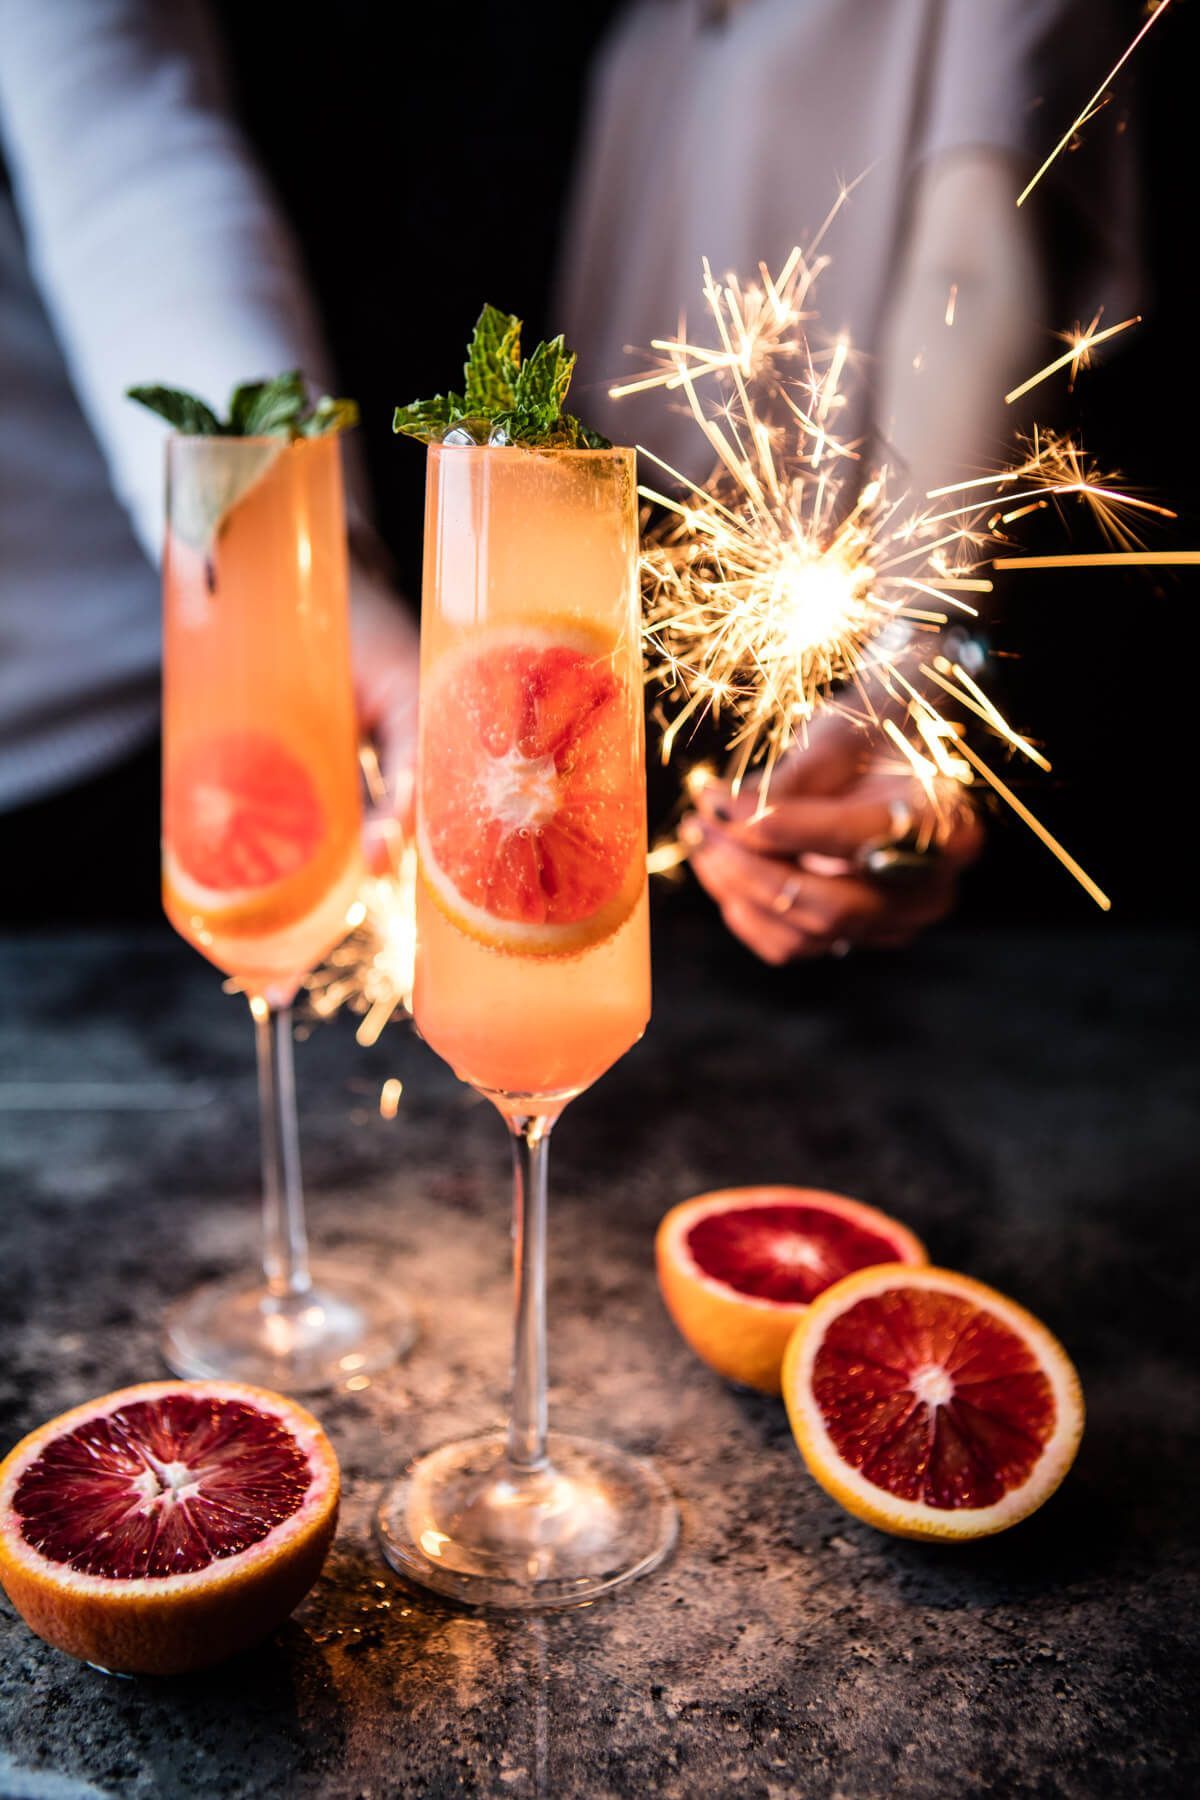 16 Recetas de cocteles con champagne para grandes celebraciones - Los Vinos - Sitio para amantes del Vino